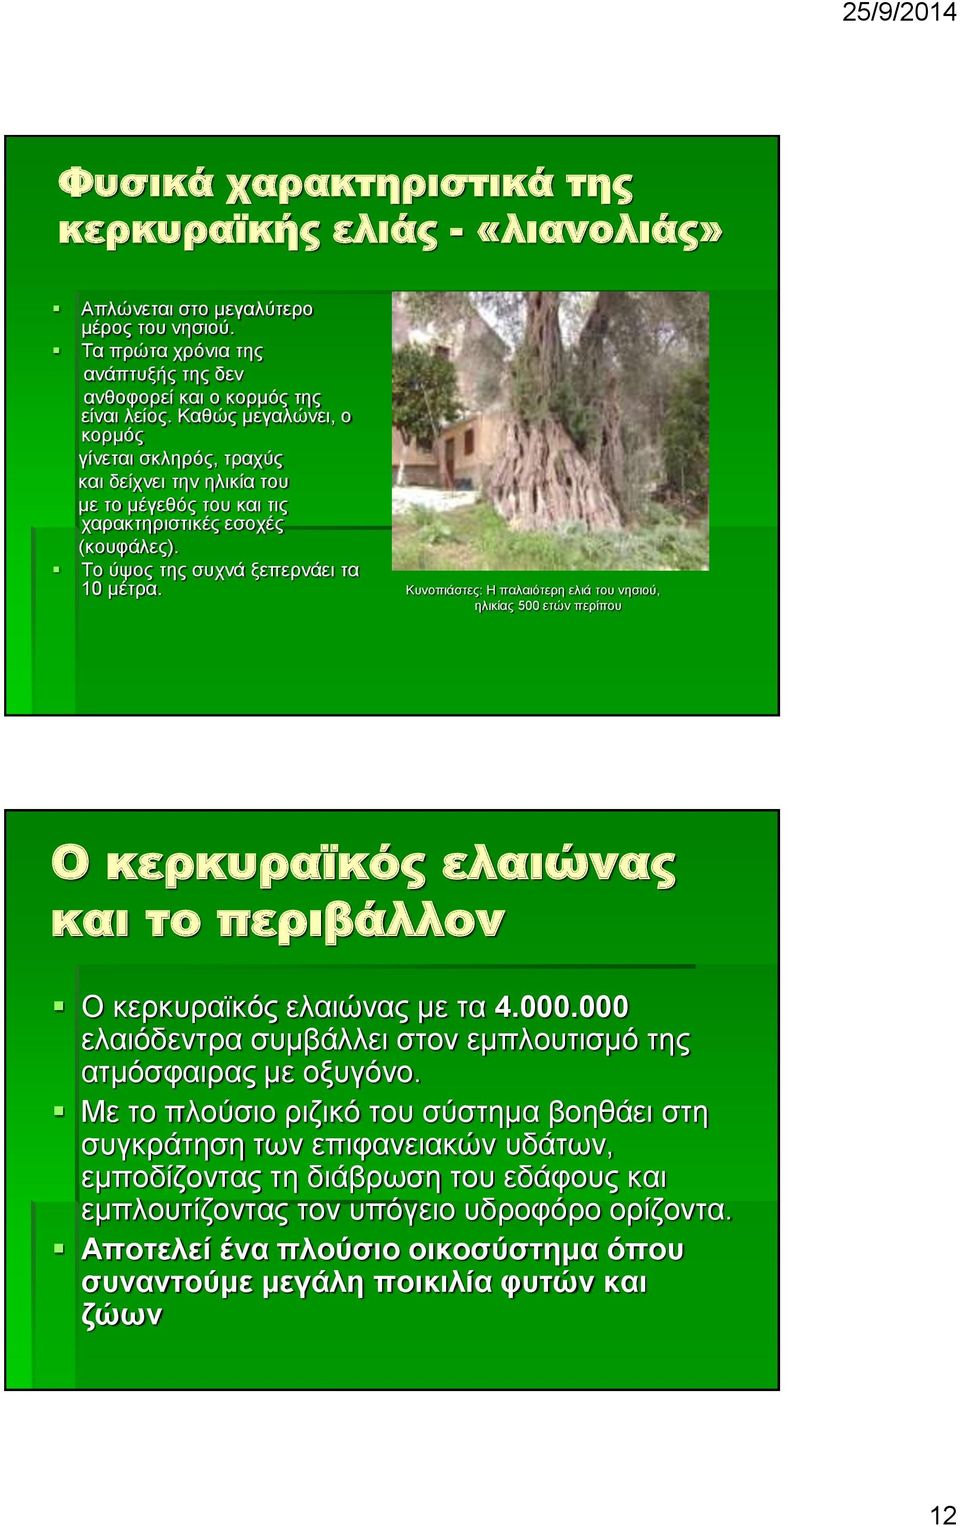 Κυνοπιάστες: Η παλαιότερη ελιά του νησιού, ηλικίας 500 ετών περίπου Ο κερκυραϊκός ελαιώνας και το περιβάλλον Ο κερκυραϊκός ελαιώνας με τα 4.000.